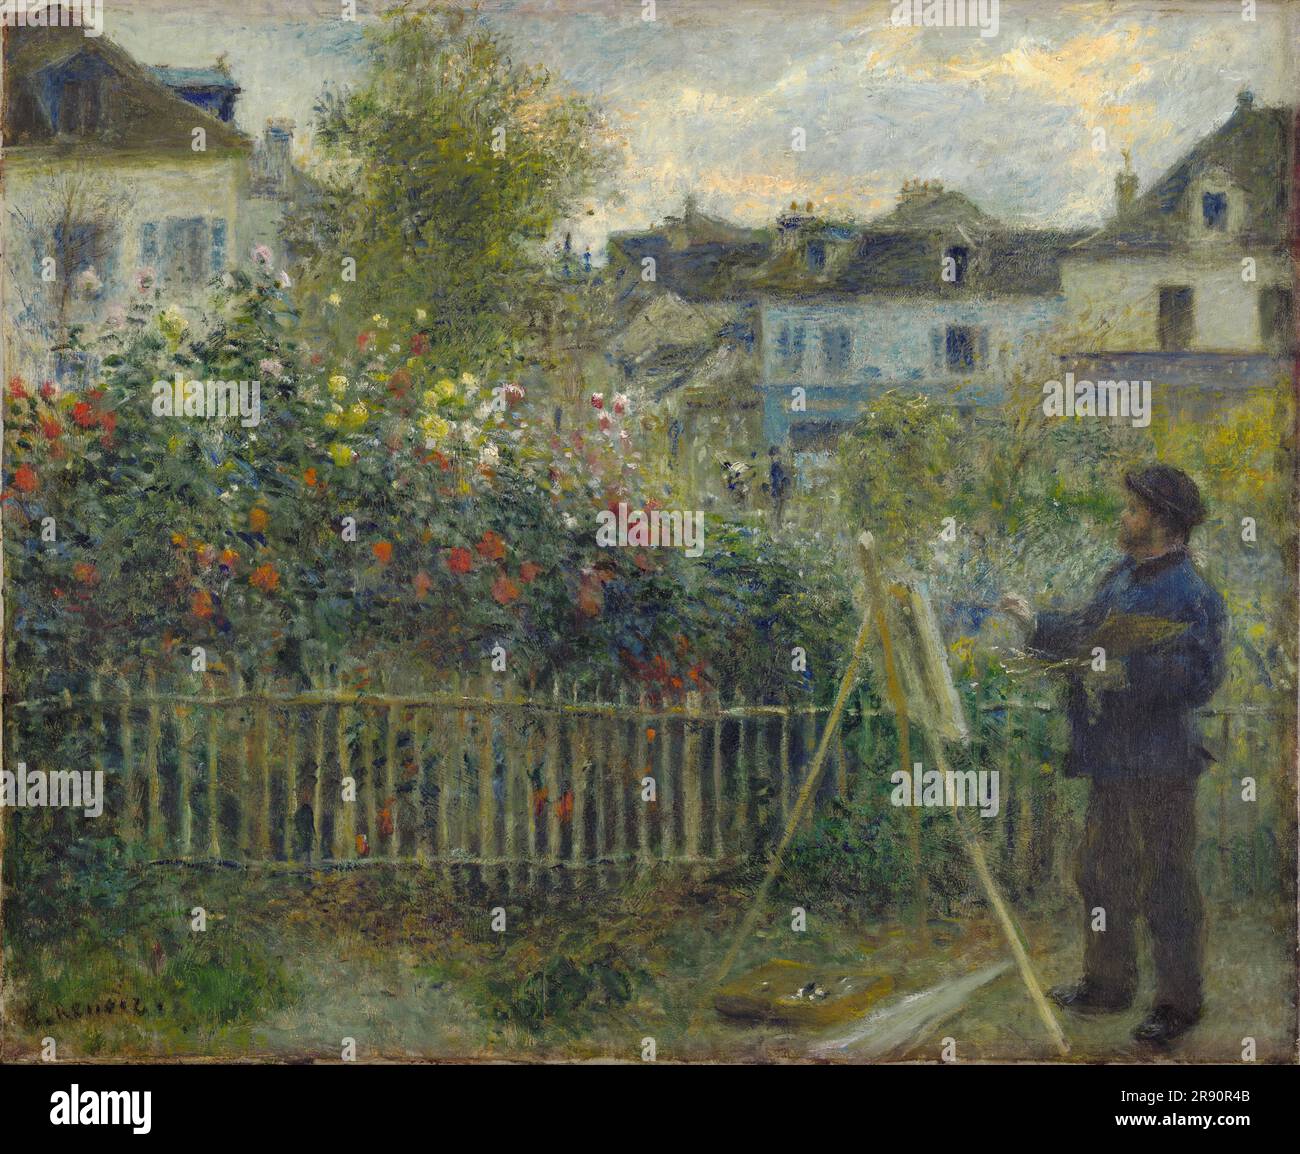 Claude Monet peinture dans son jardin à Argenteuil, 1873. Trouvé dans la collection de la Wadsworth Athenaeum, Hartford. Banque D'Images